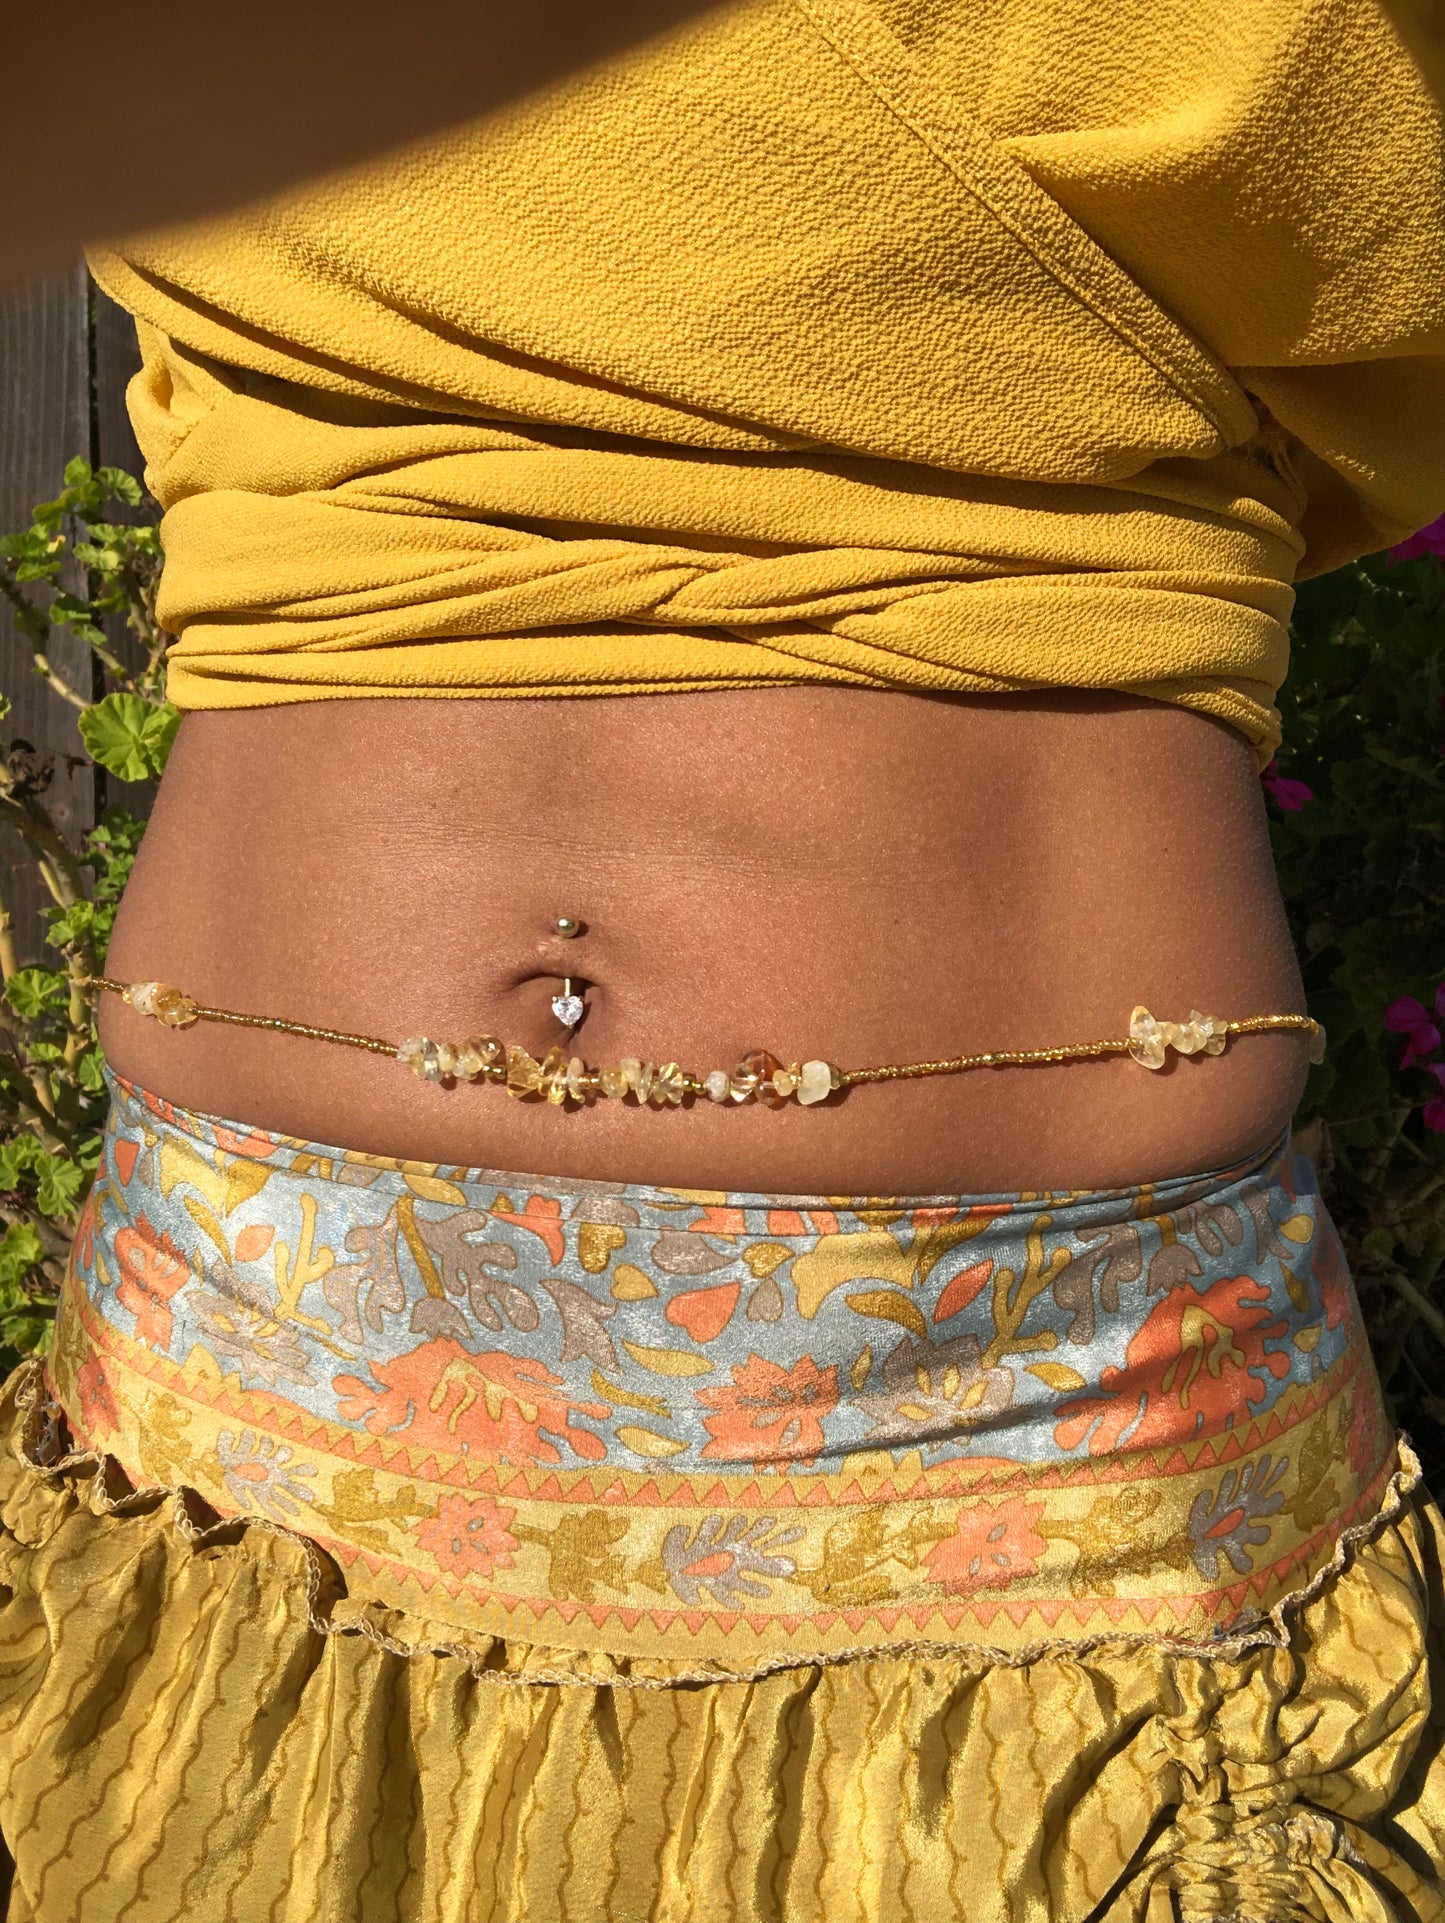 Golden Goddess waist beads